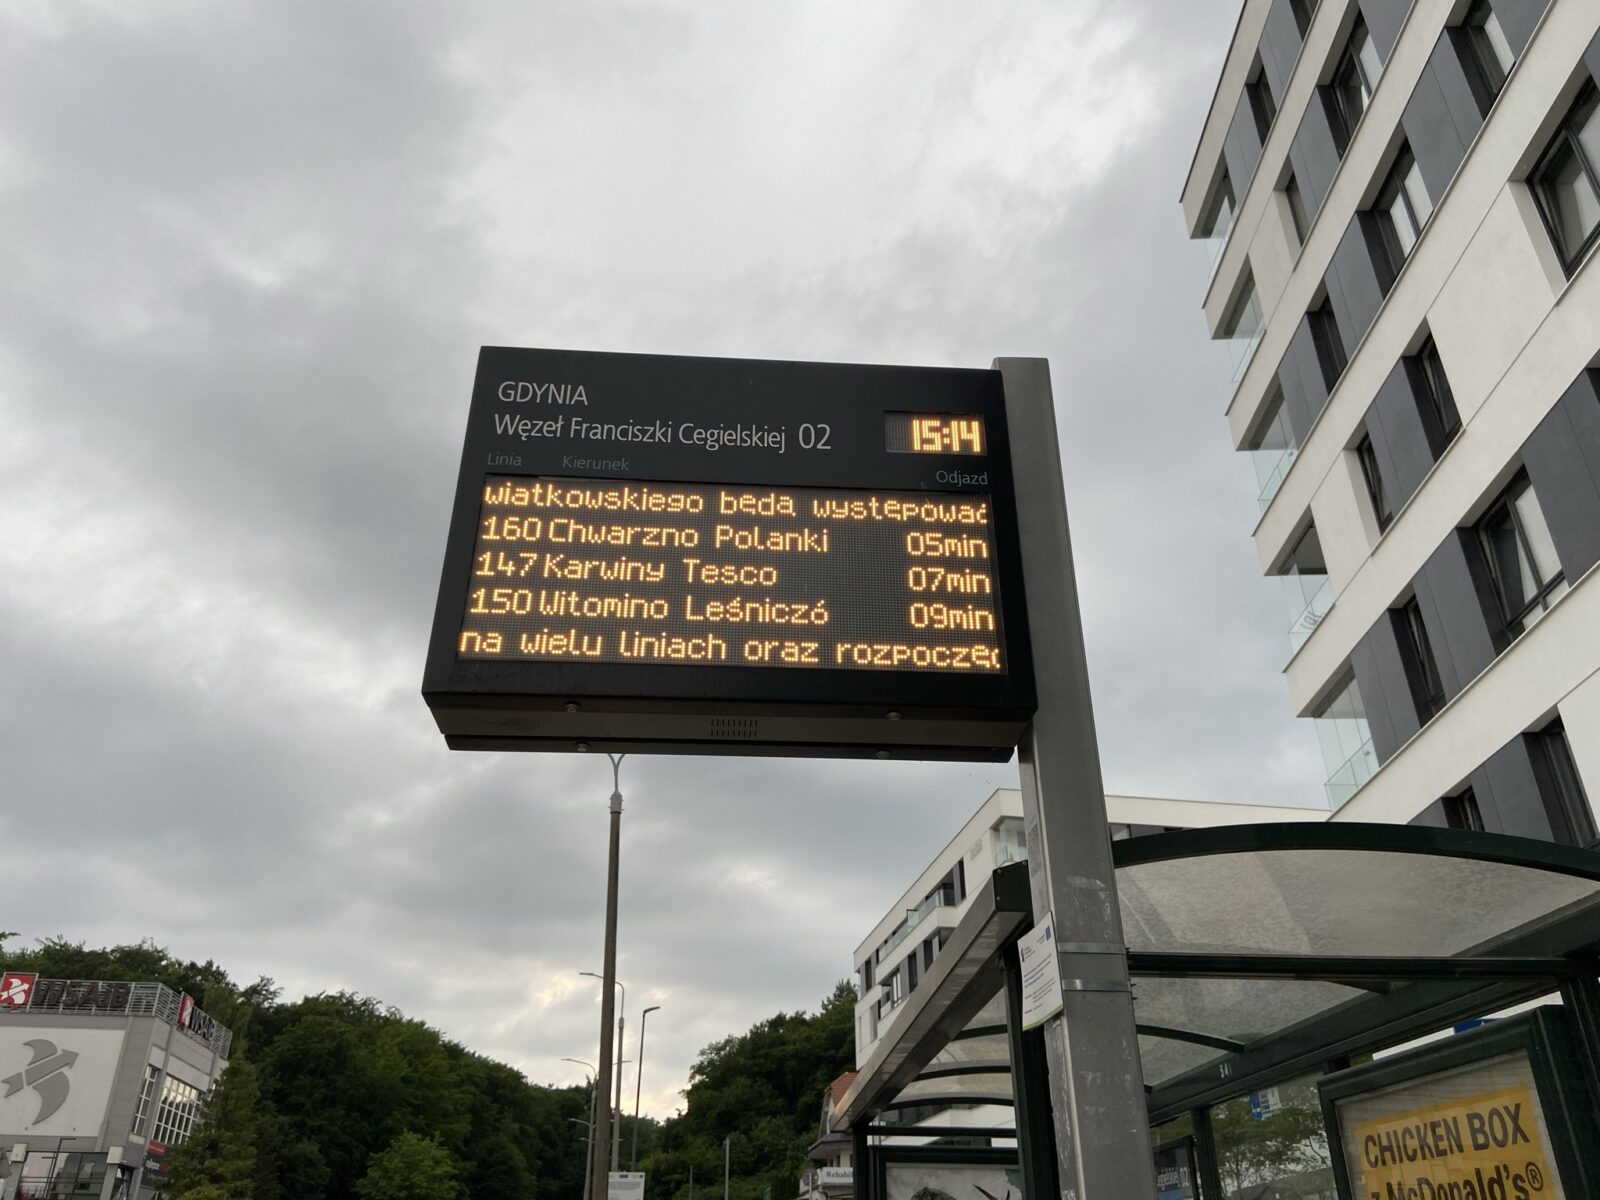 Zdjęcie przedstawia tablicę informacyjną autobusów komunikacji miejskiej w Gdyni przy ulicy Kieleckiej.